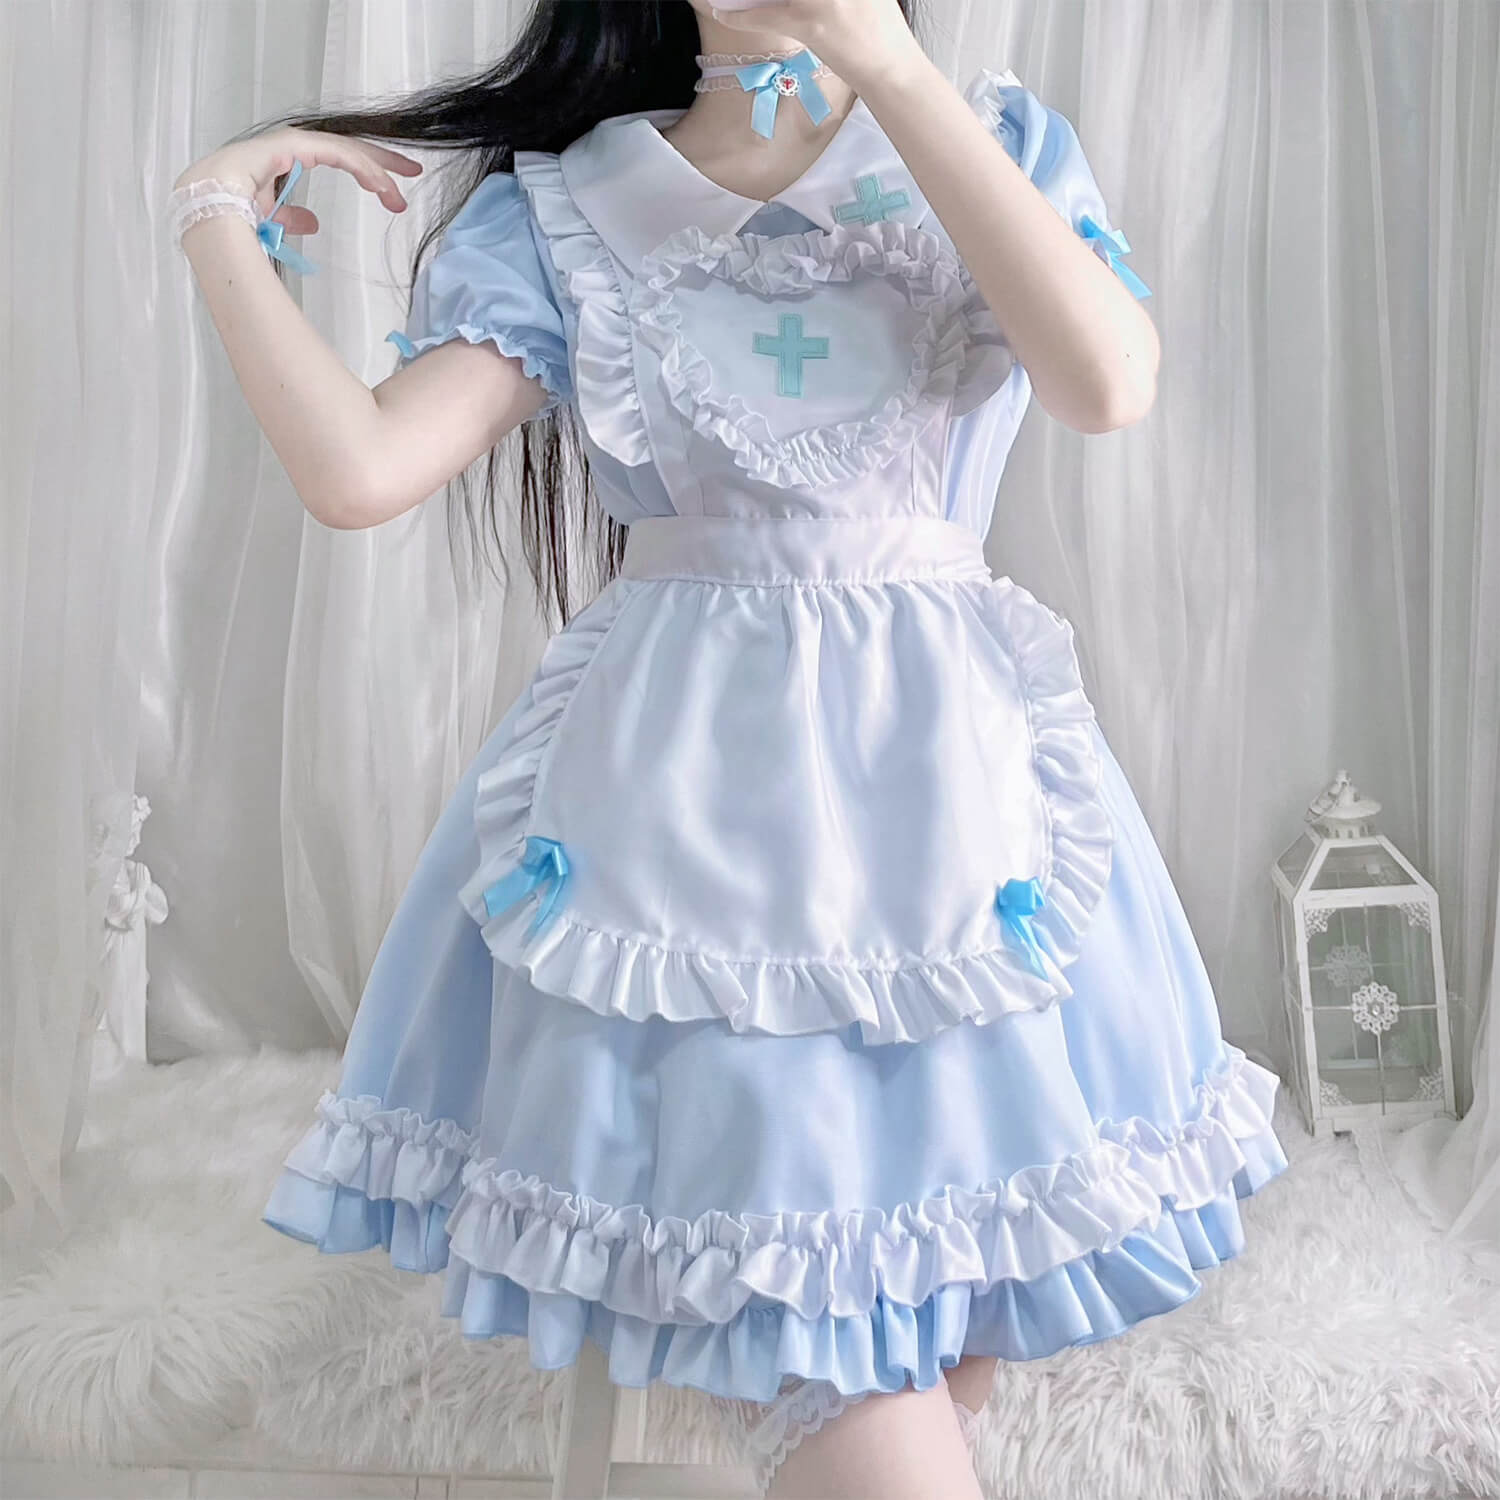 cutiekill-cross-lolita-maid-dress-ah0486